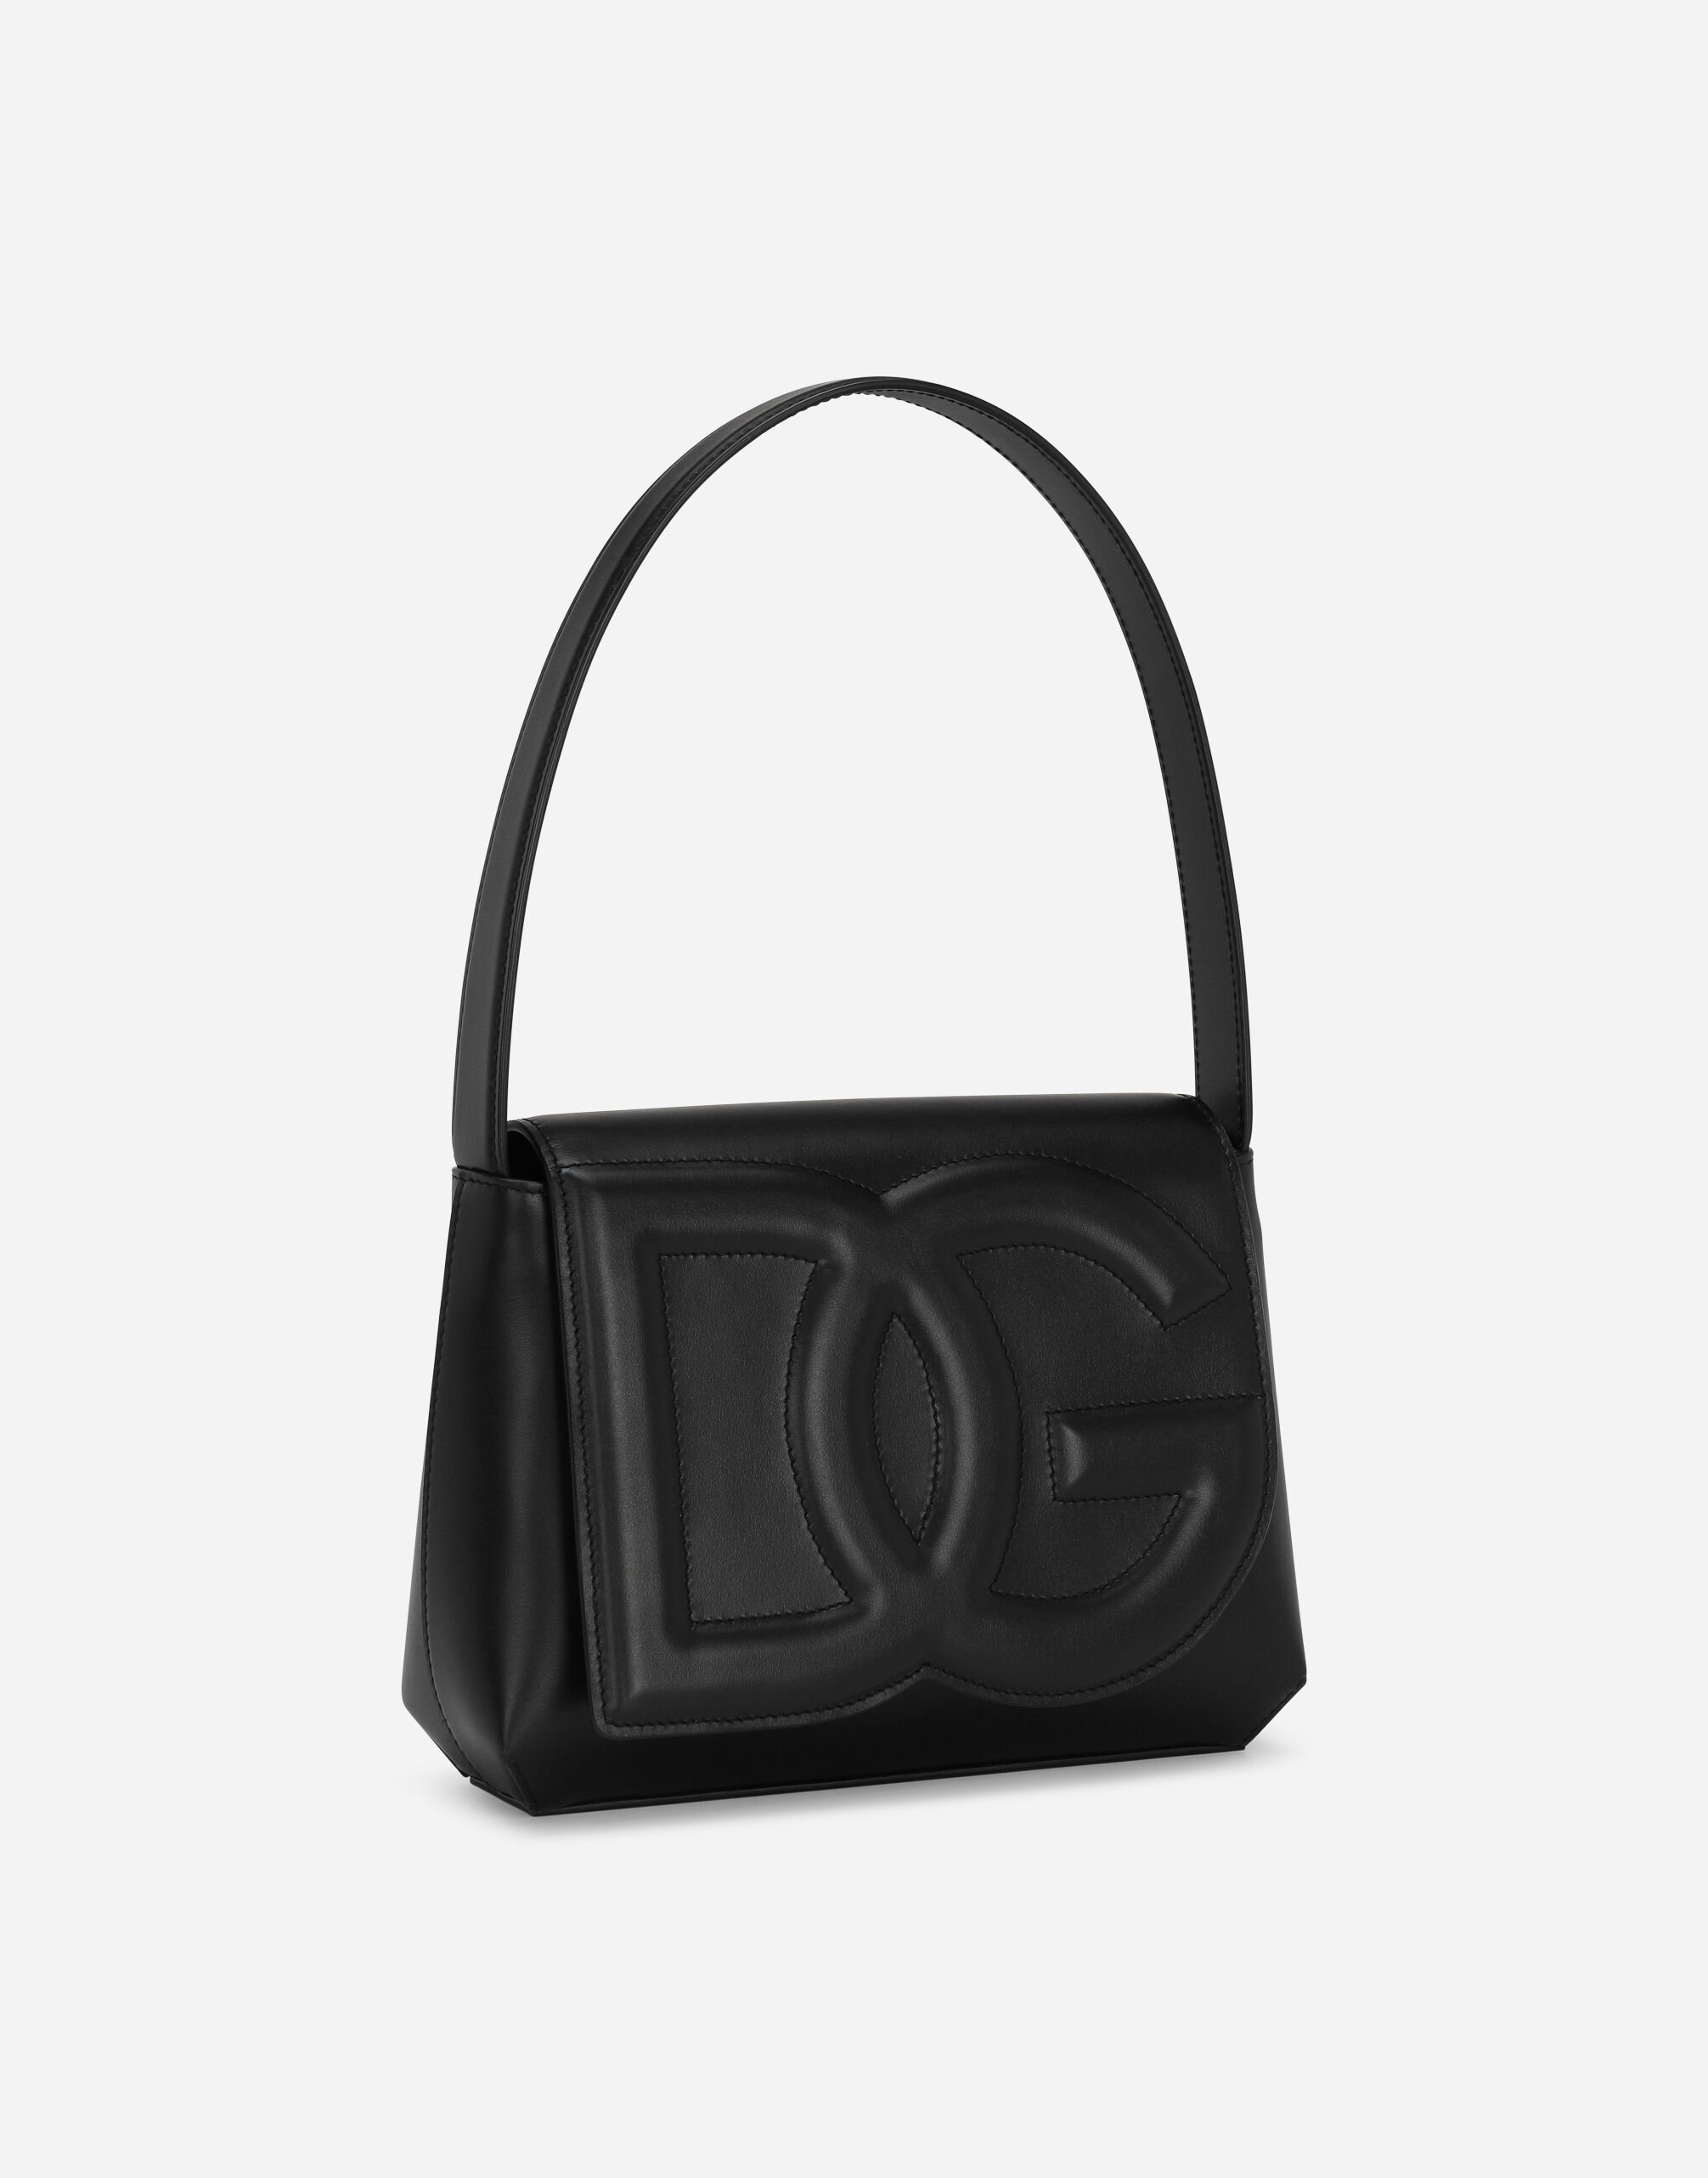 DG Logo Bag shoulder bag